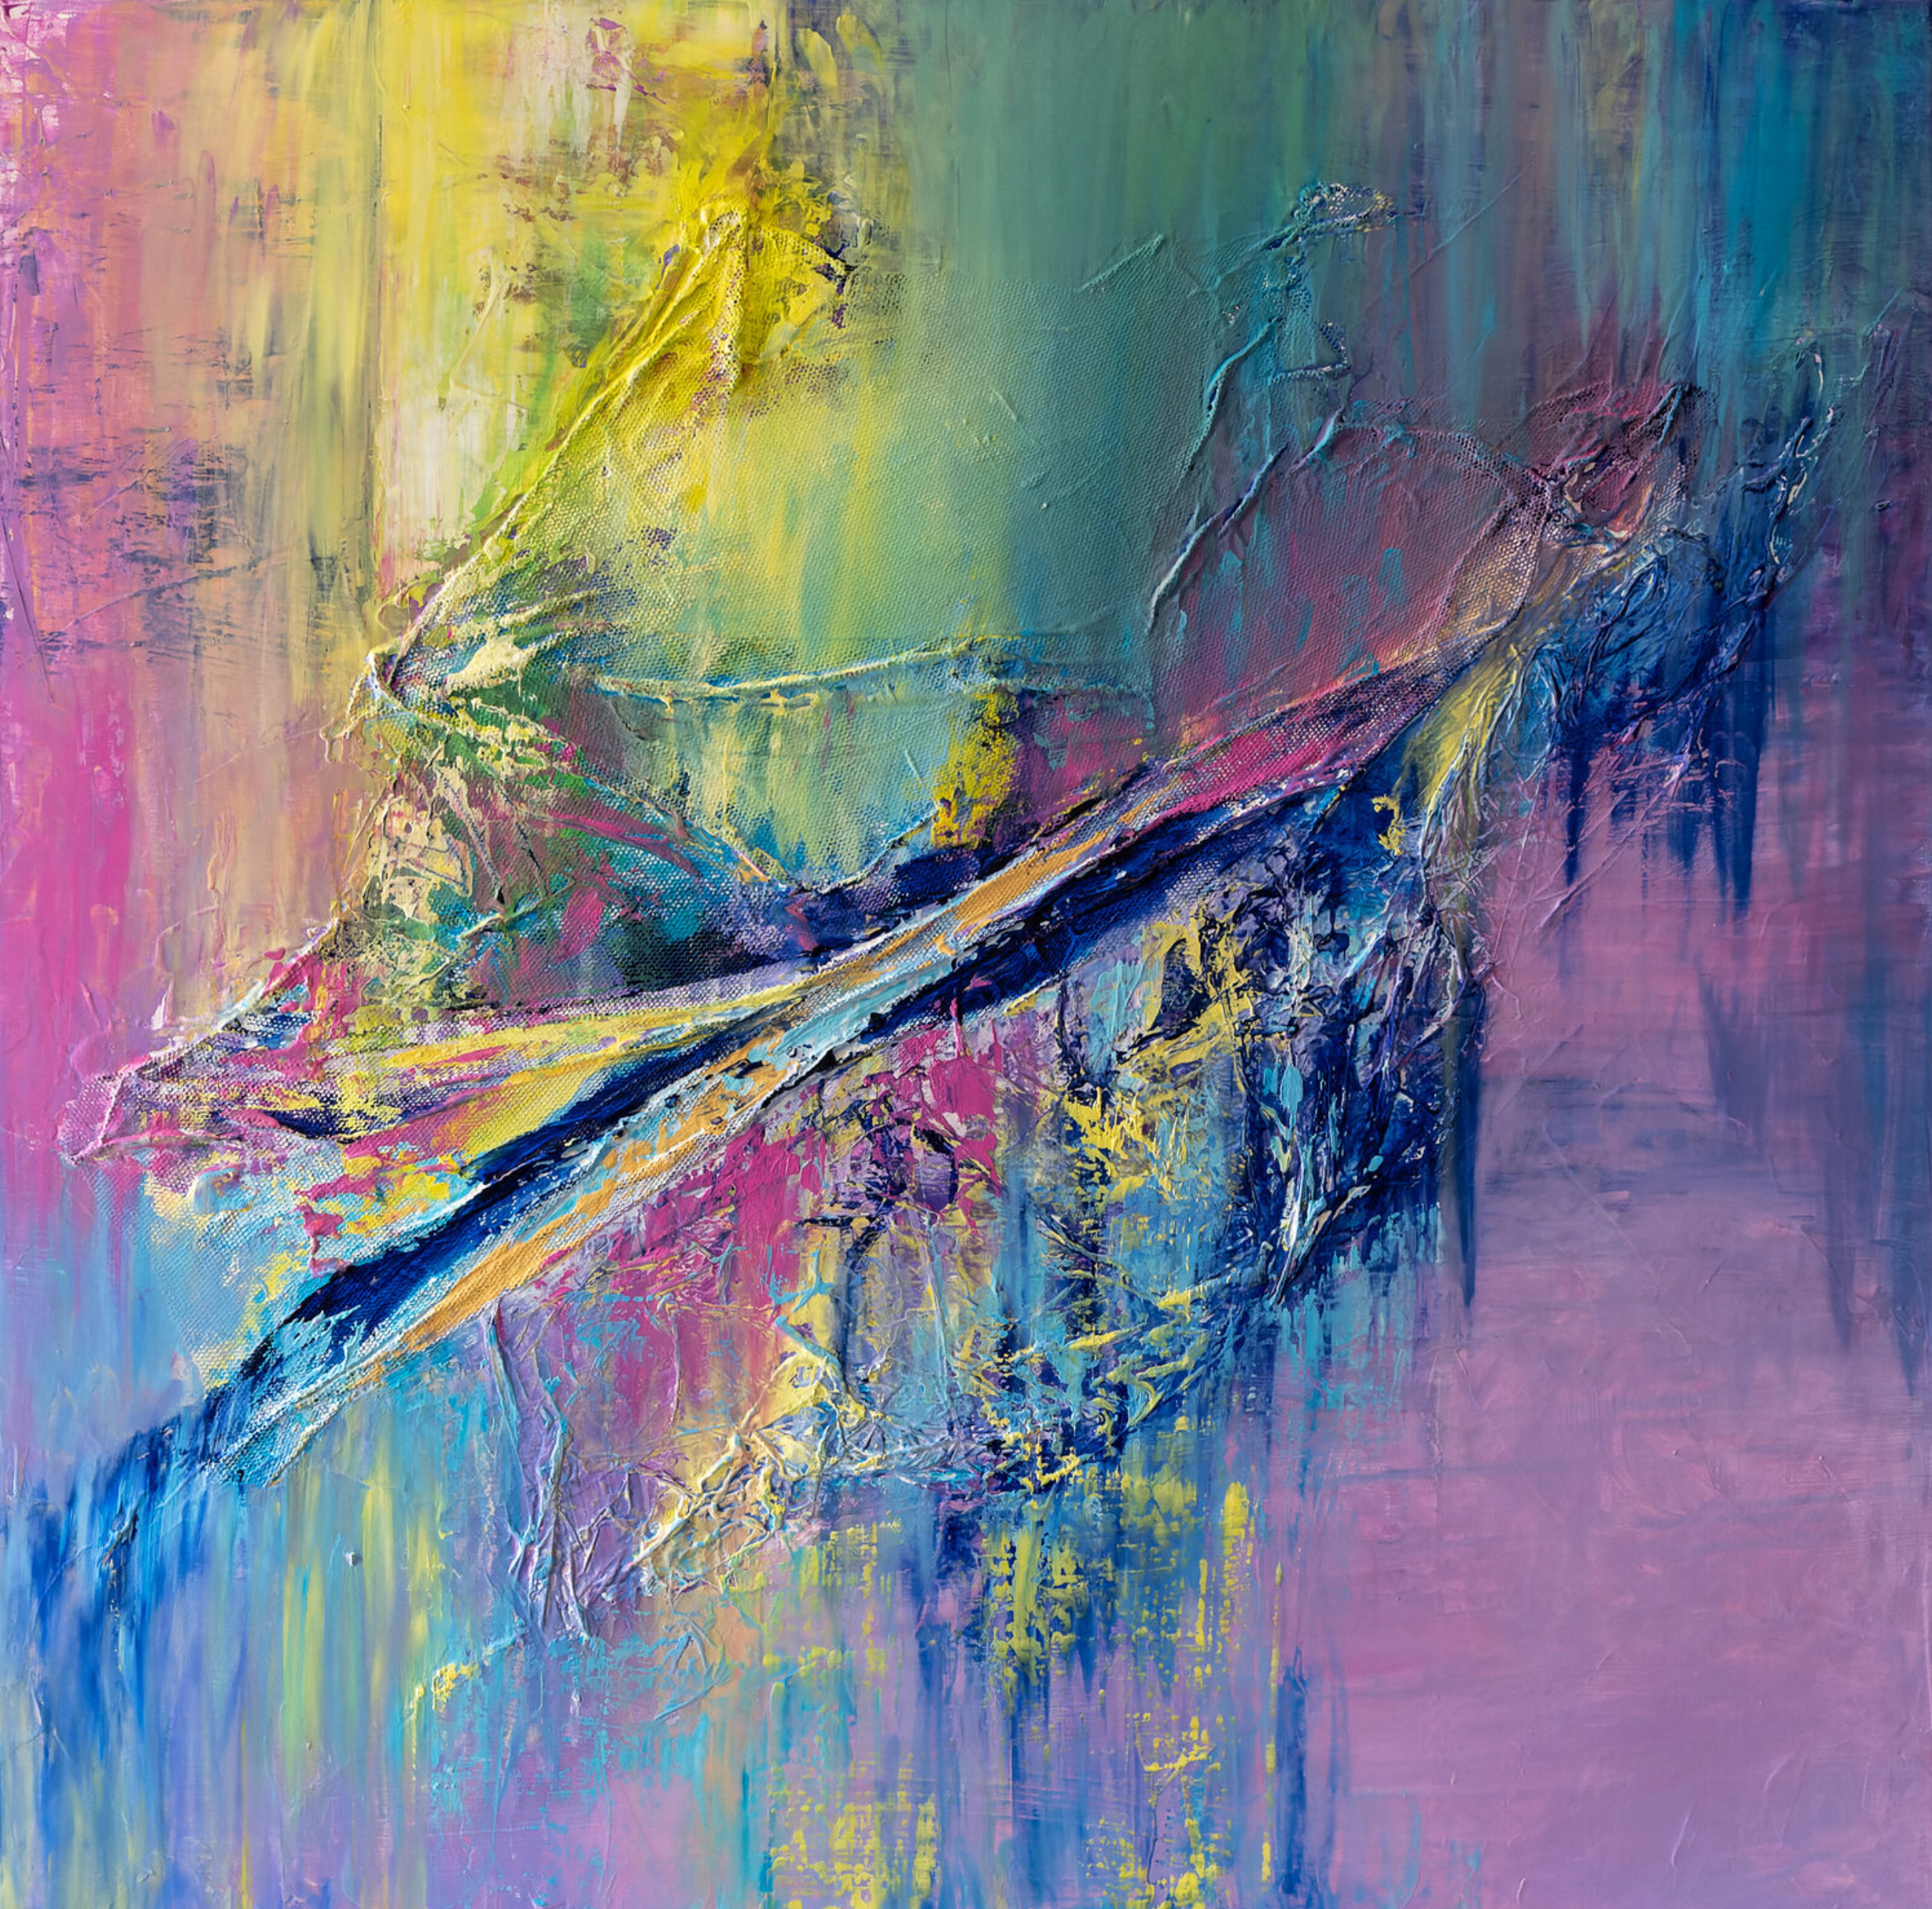 El cuadro abstracto "Apesanteur" de Françoise Dugourd-Caput muestra una abstracción lírica de colores cálidos y suaves, articulada en torno a una diagonal de materia en ingravidez, de ahí el título.